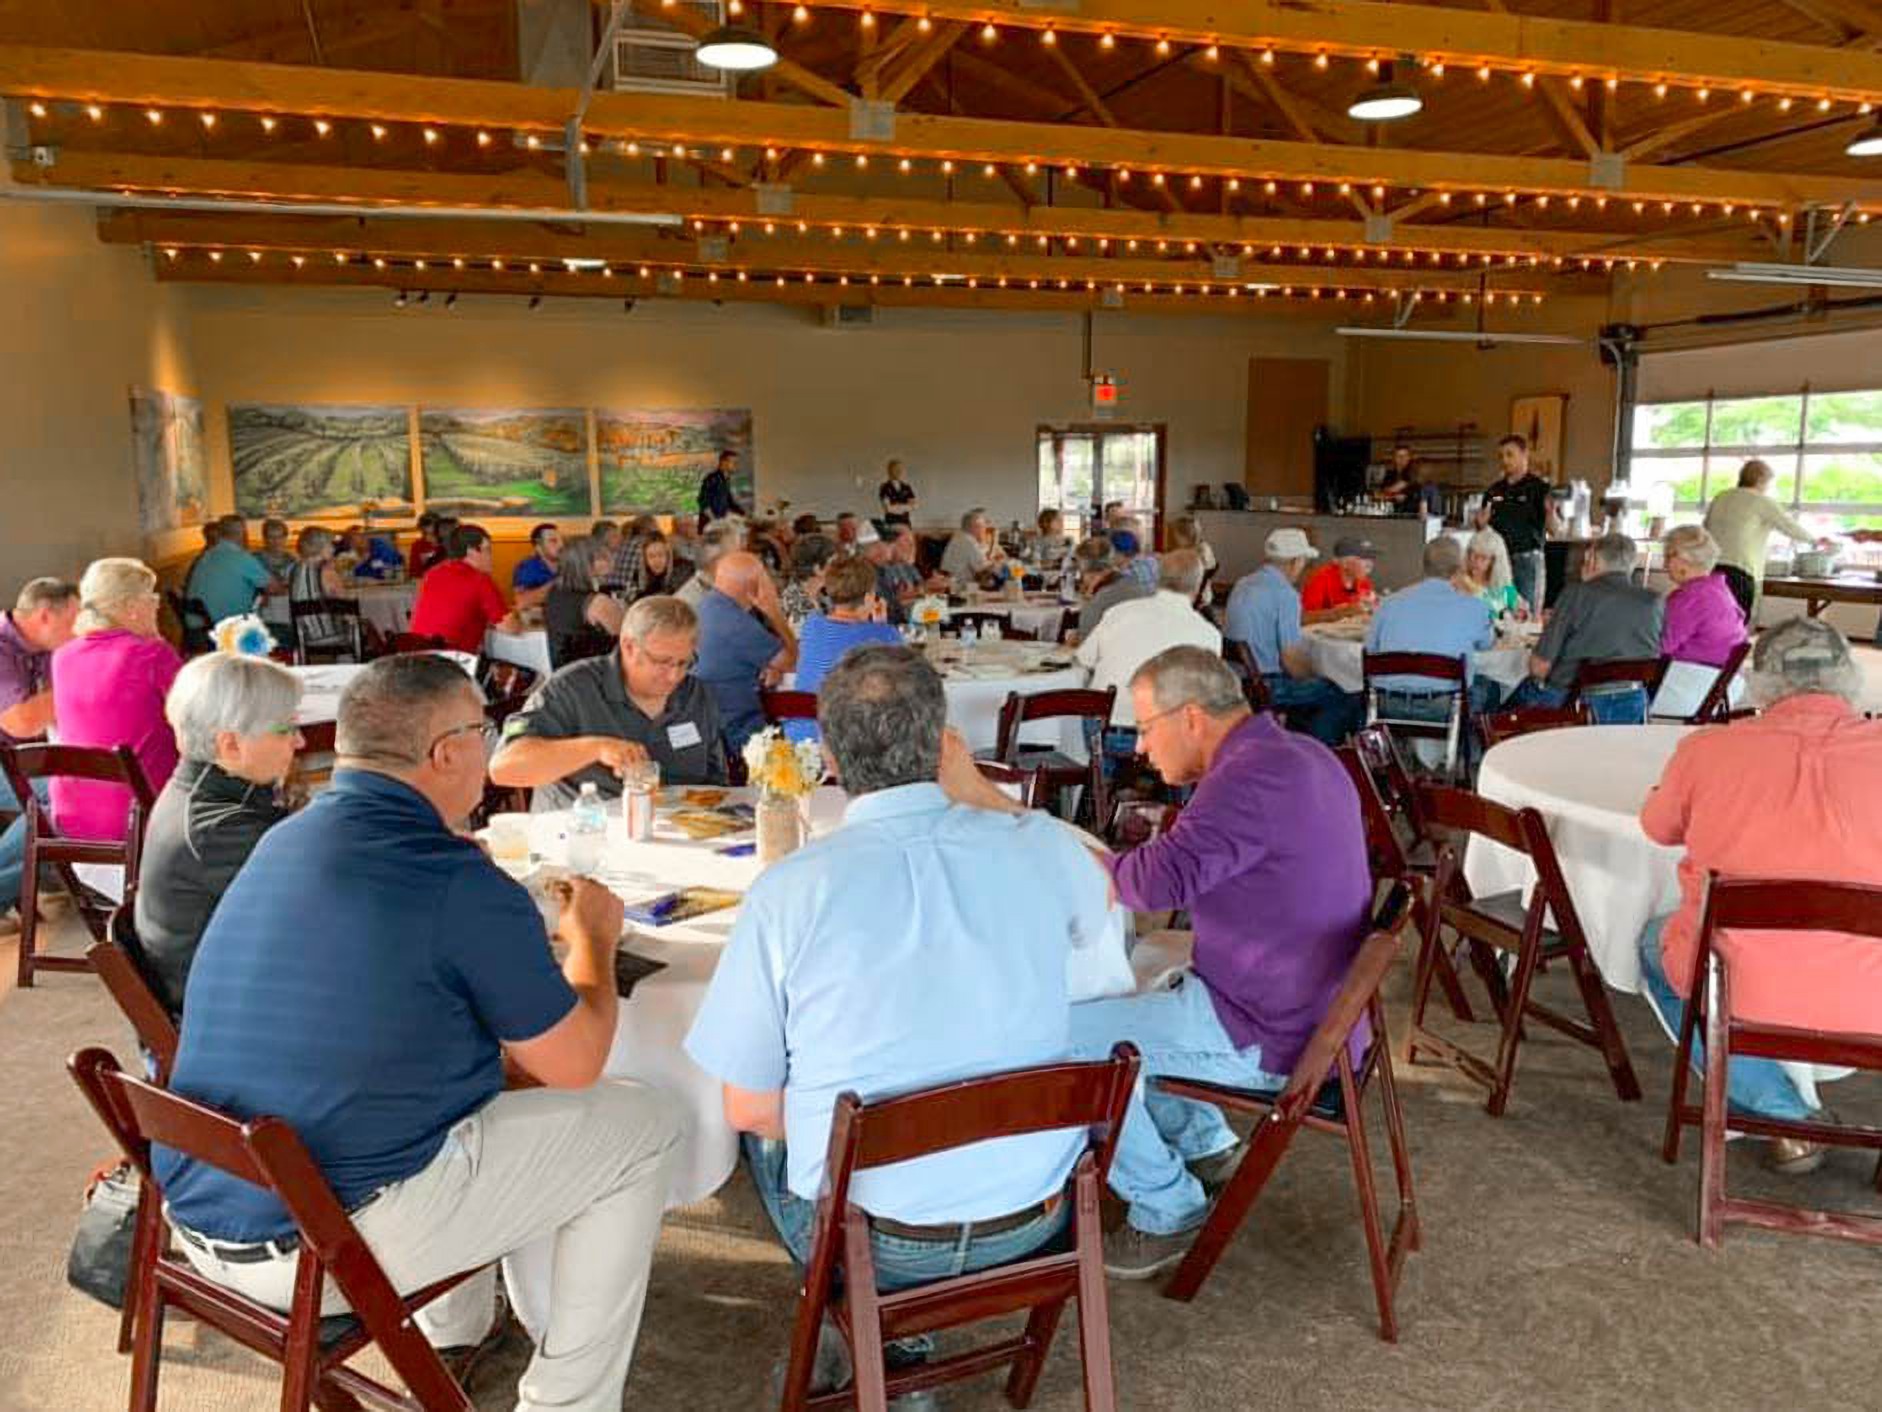 An Iowa Soybean Association farmer meeting